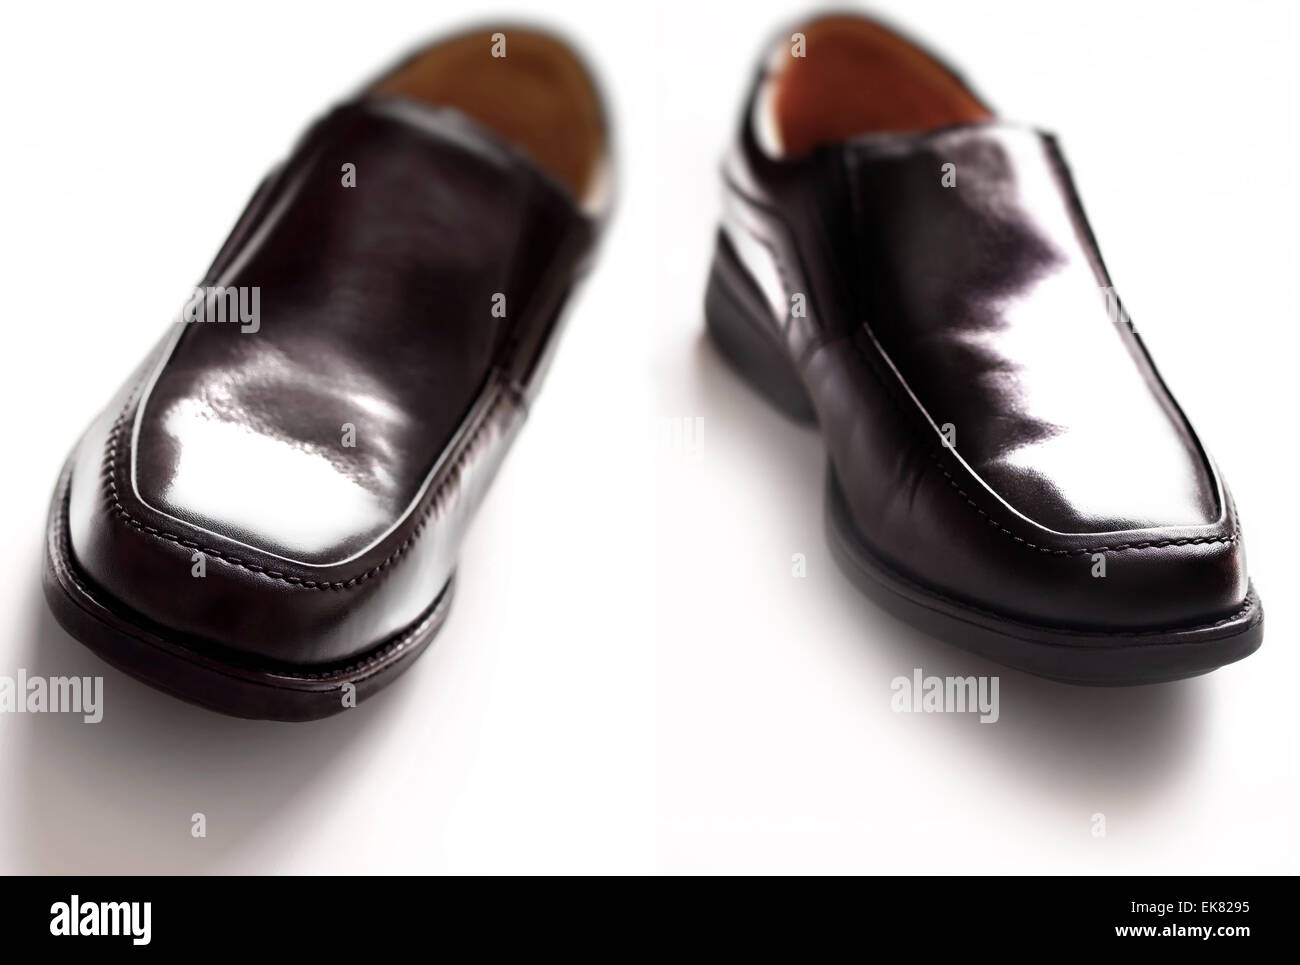 men's black business shoes Stock Photo